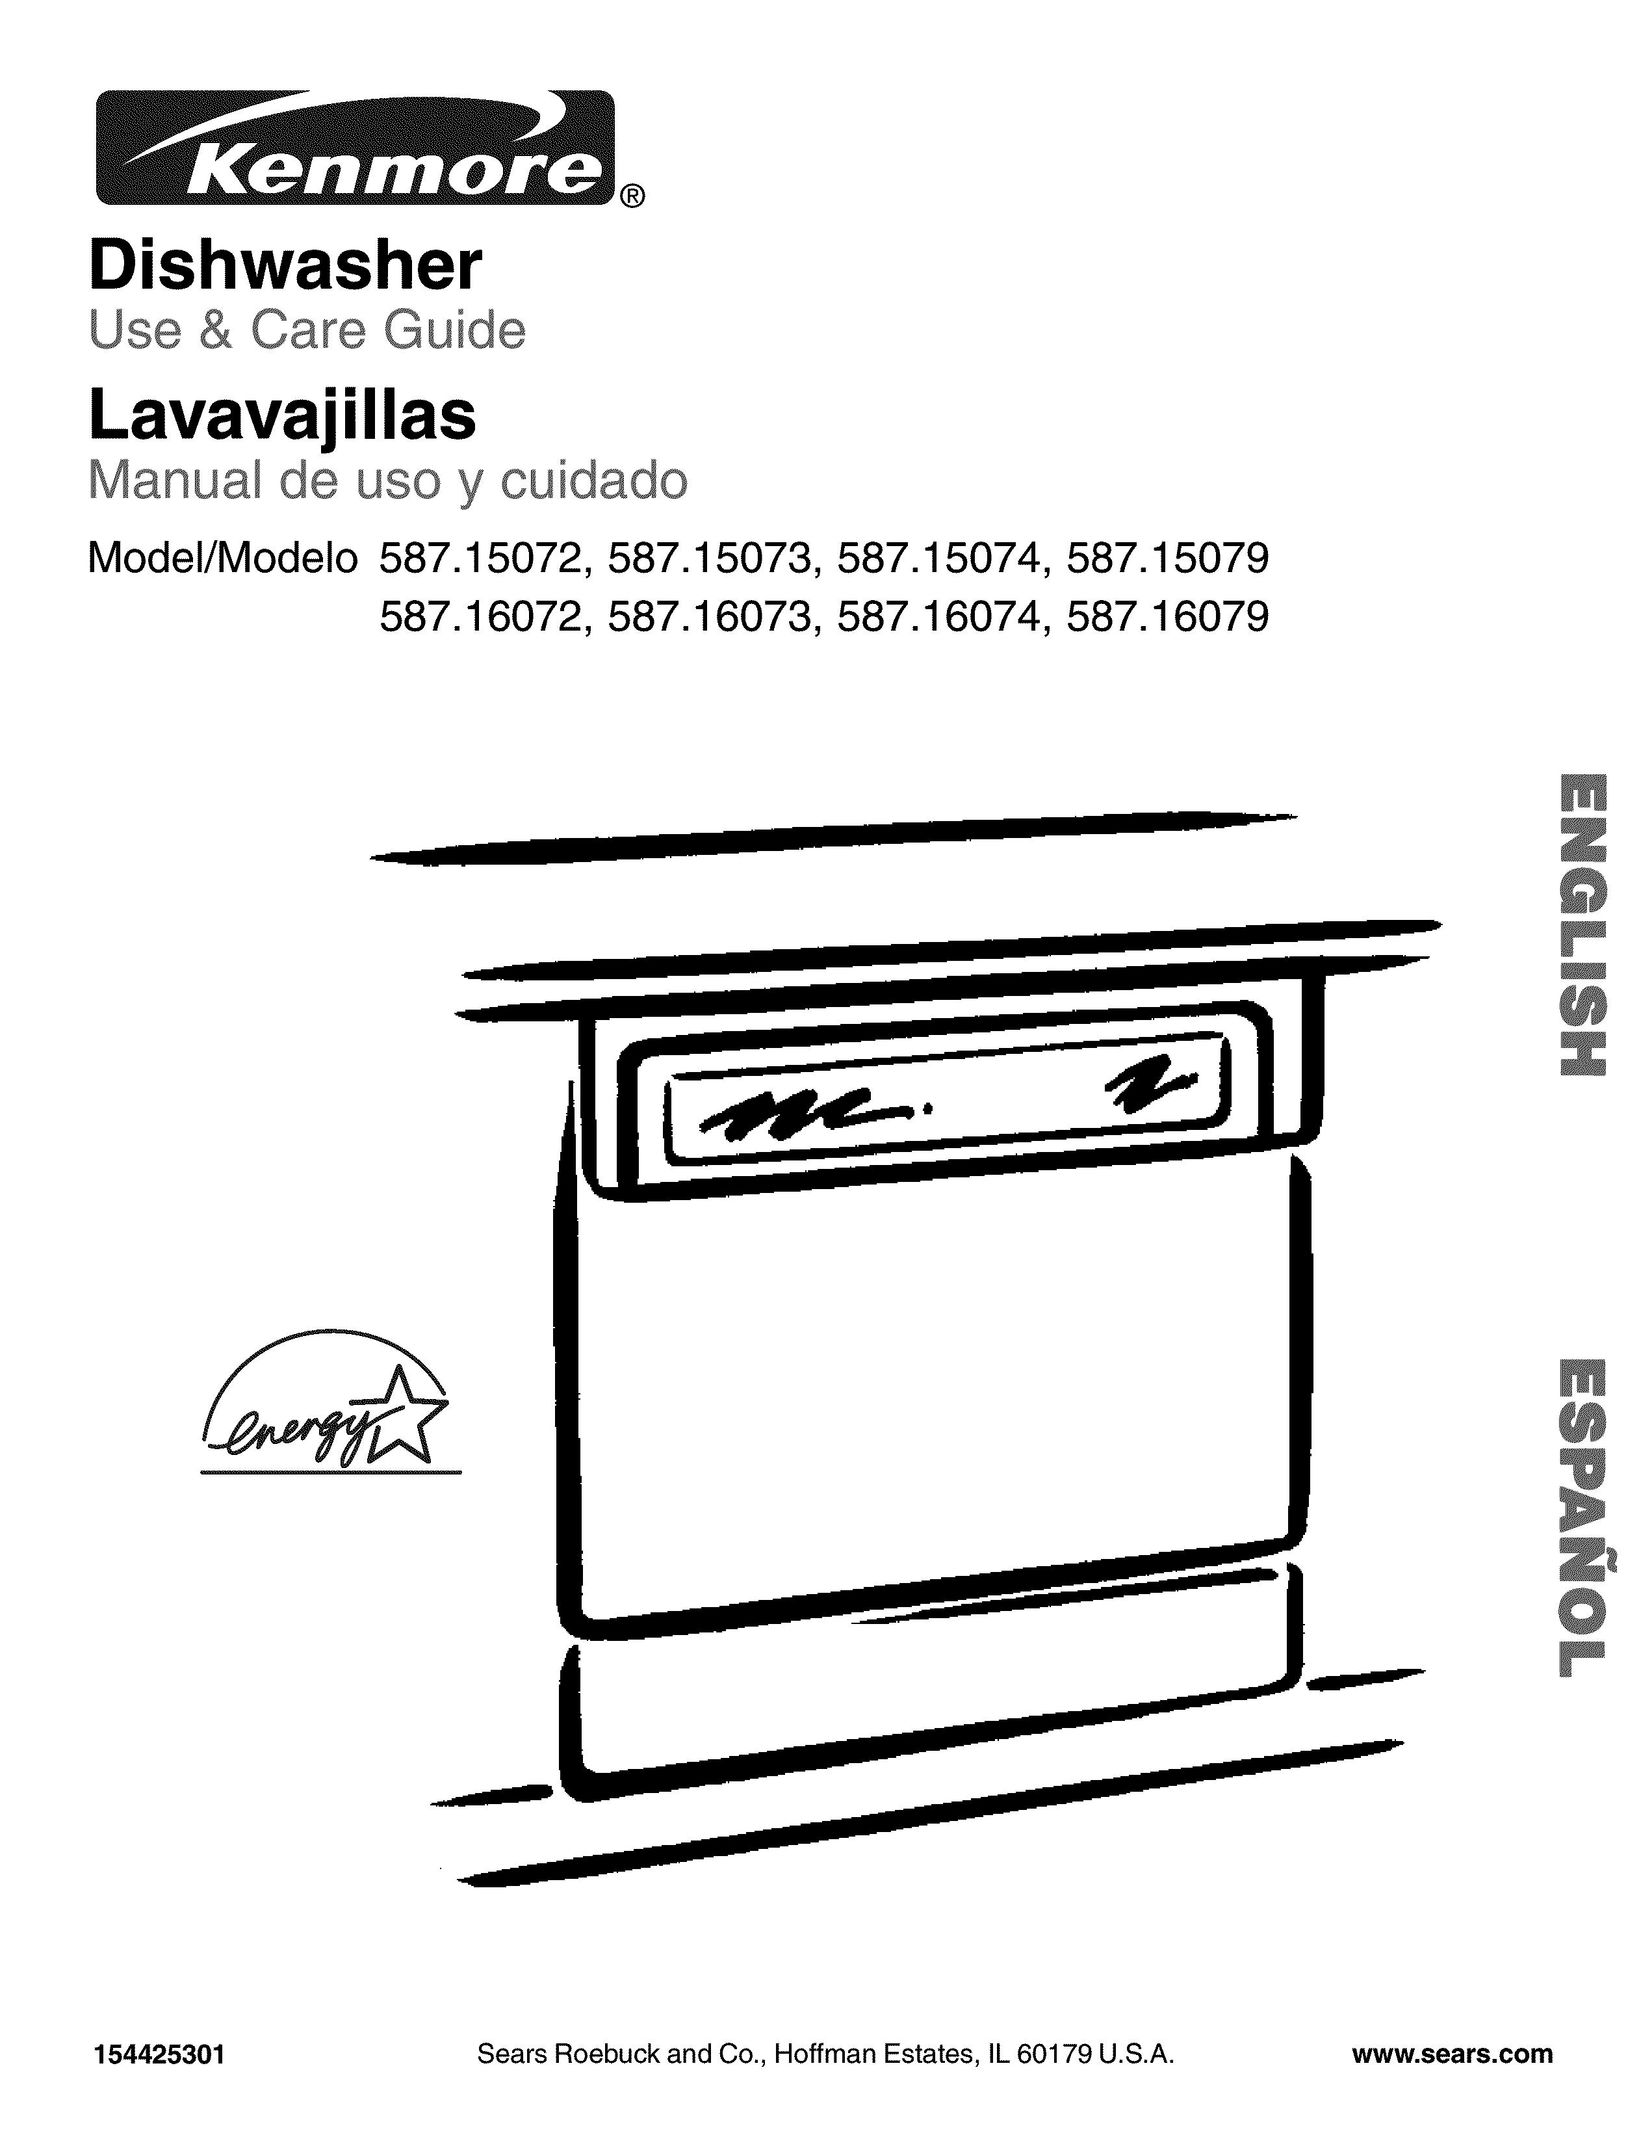 Kenmore 587.15073 Dishwasher User Manual